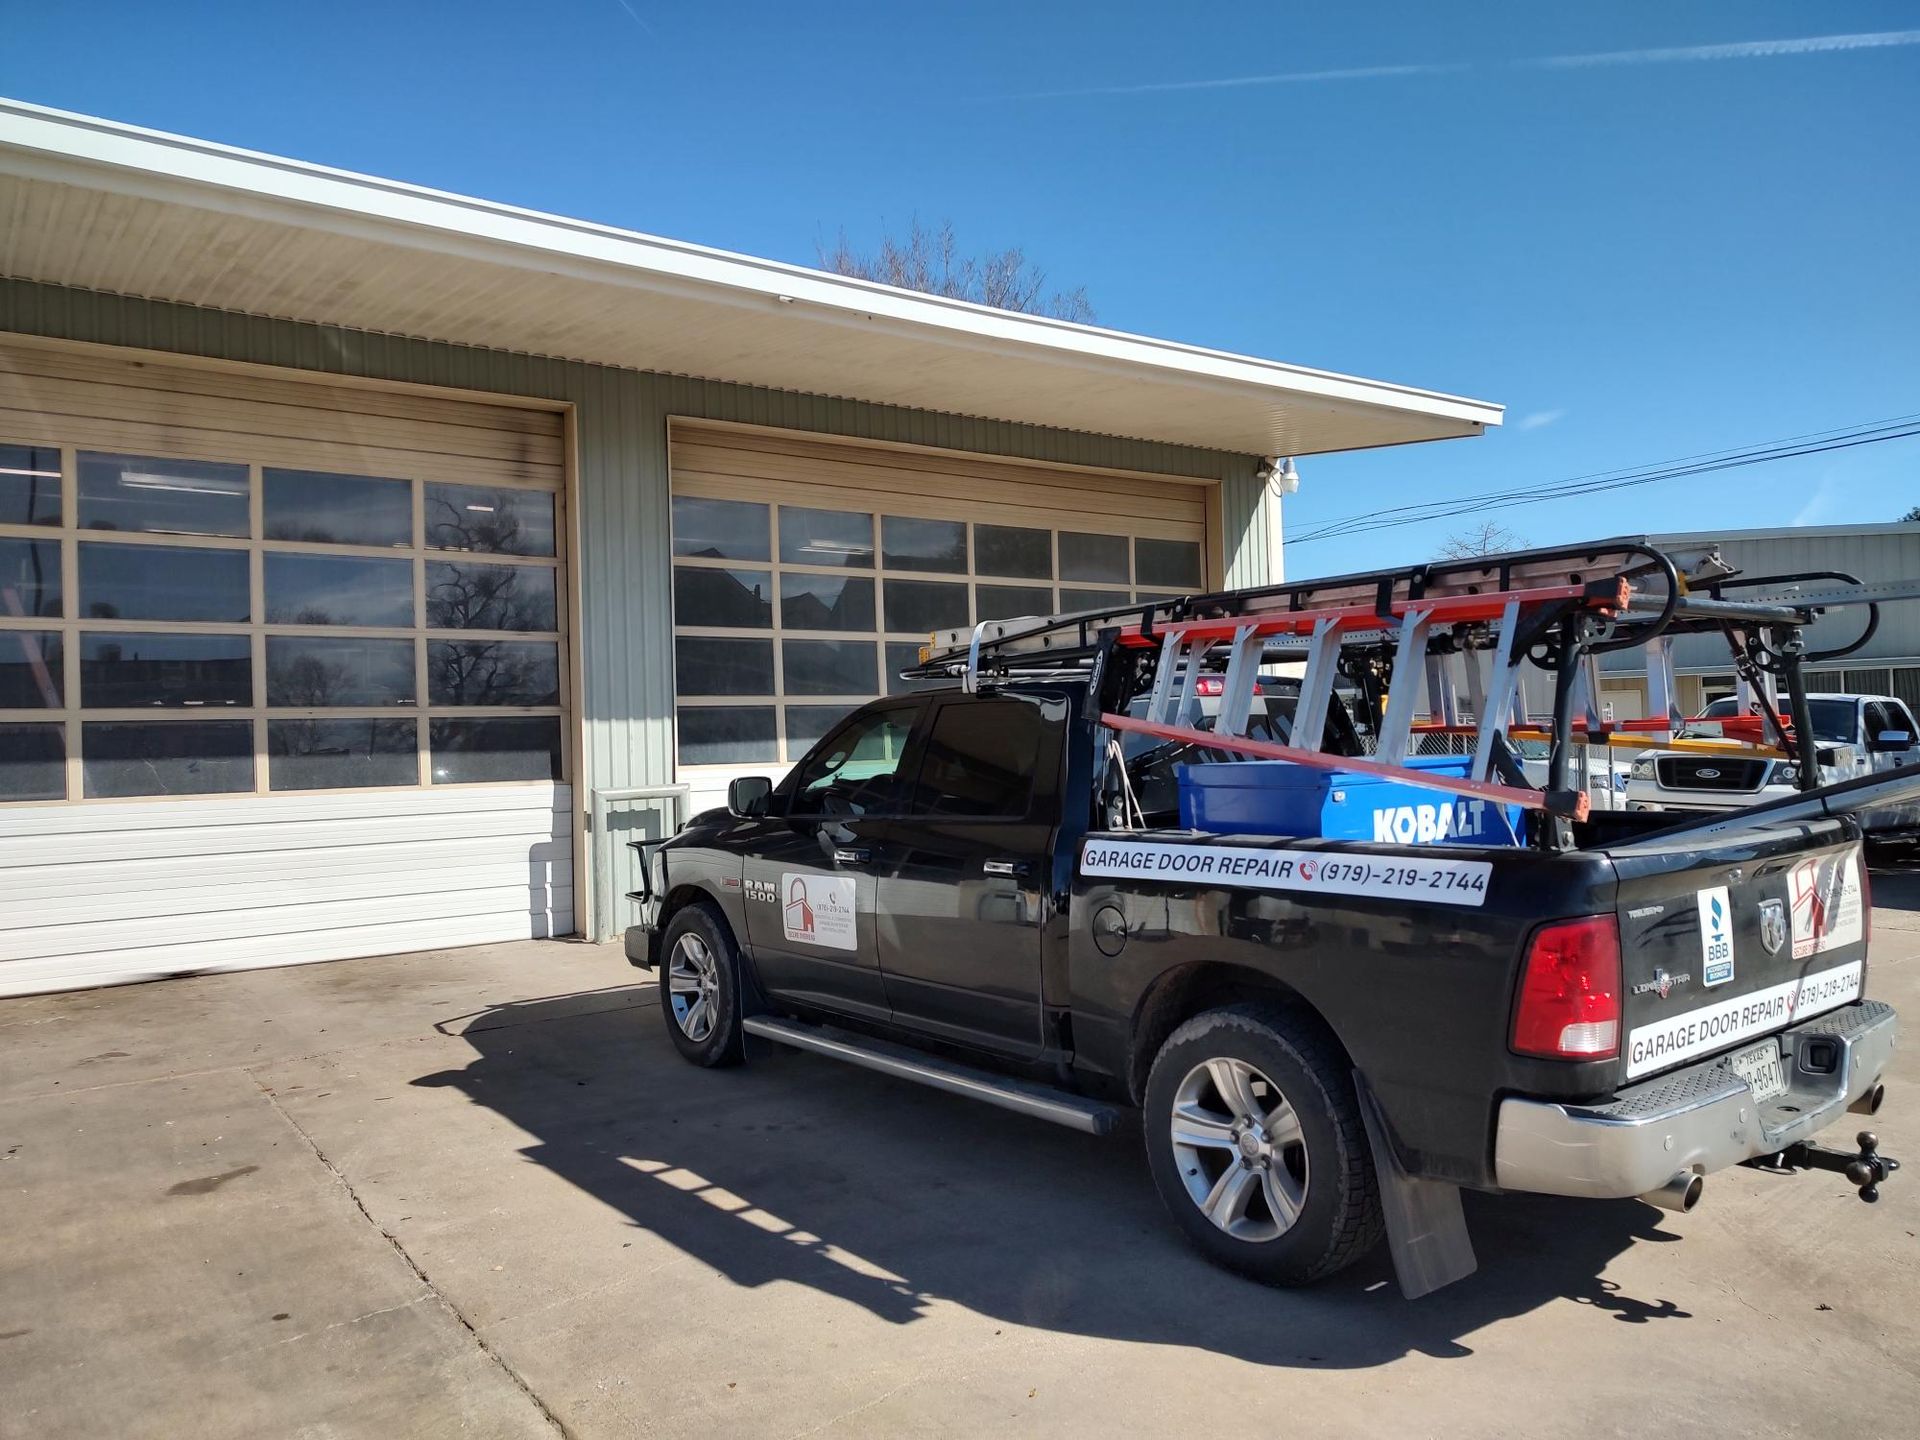 Man Repairing Garage Door — Bryan, TX — Secure Overhead Doors